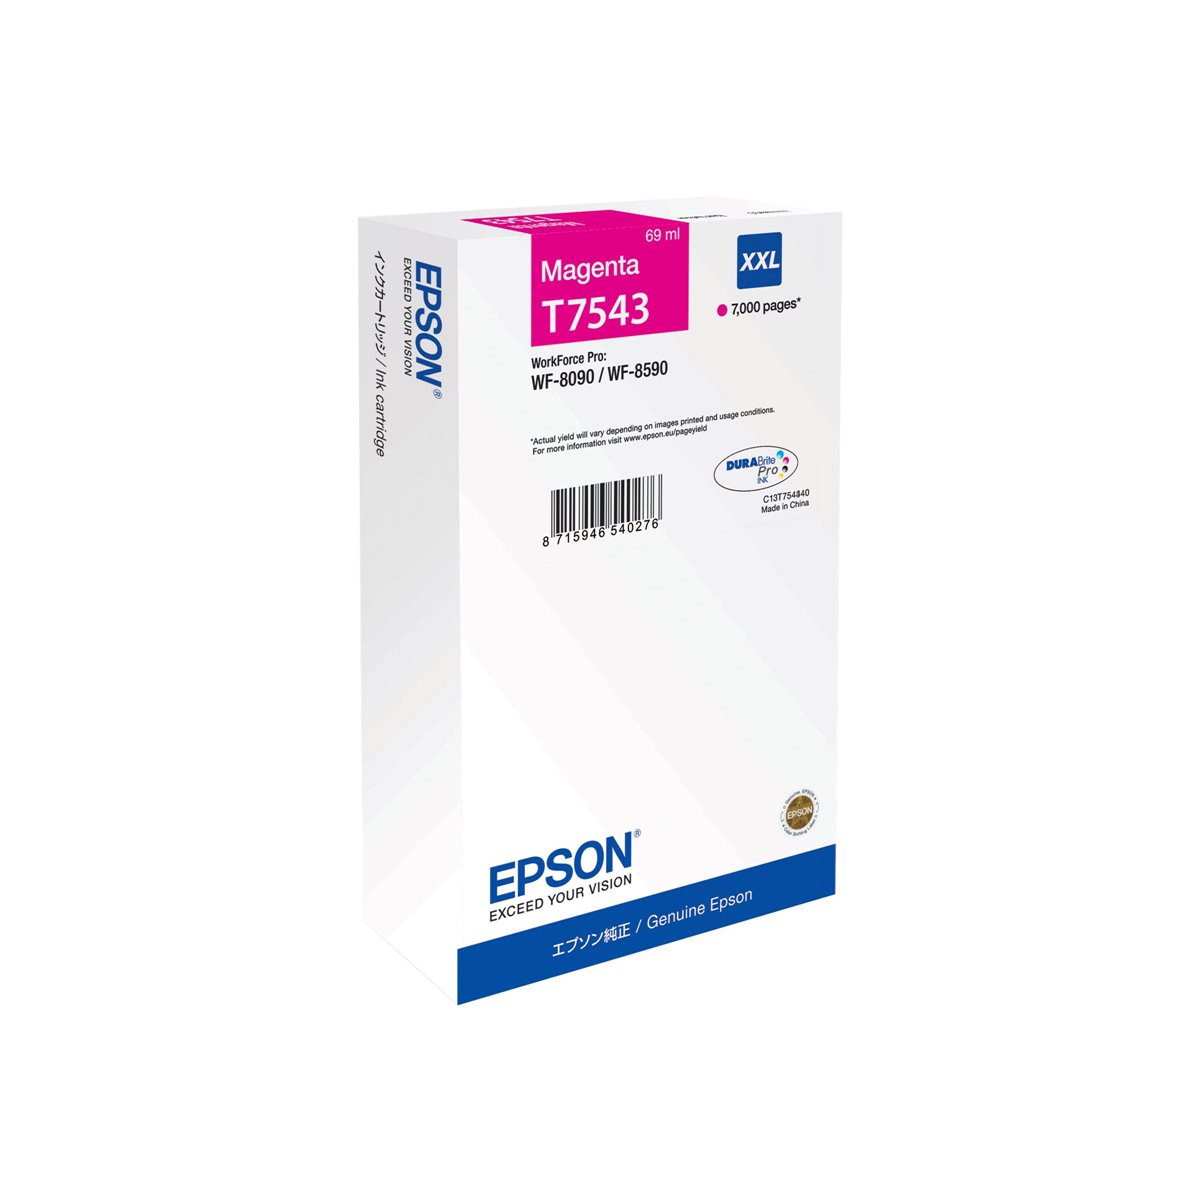 EPSON WF-8090 - WF-8590 Ink Cartridge XXL Magenta